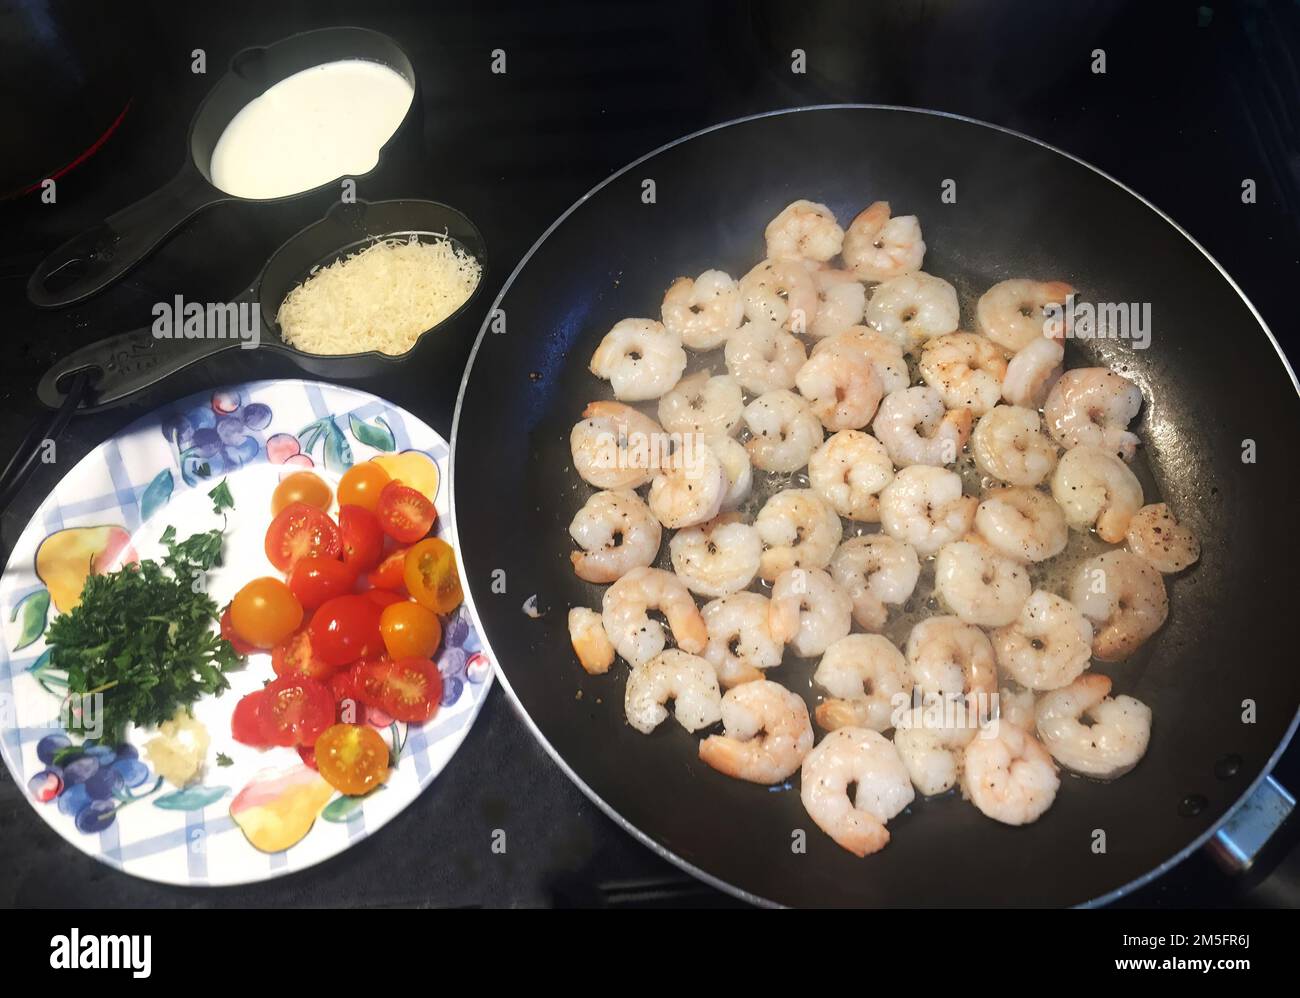 Exhibición colorida de ingredientes de cena de camarón para la preparación de la comida. Concepto de alimentación saludable, comida fácil, simple, cocina casera Foto de stock